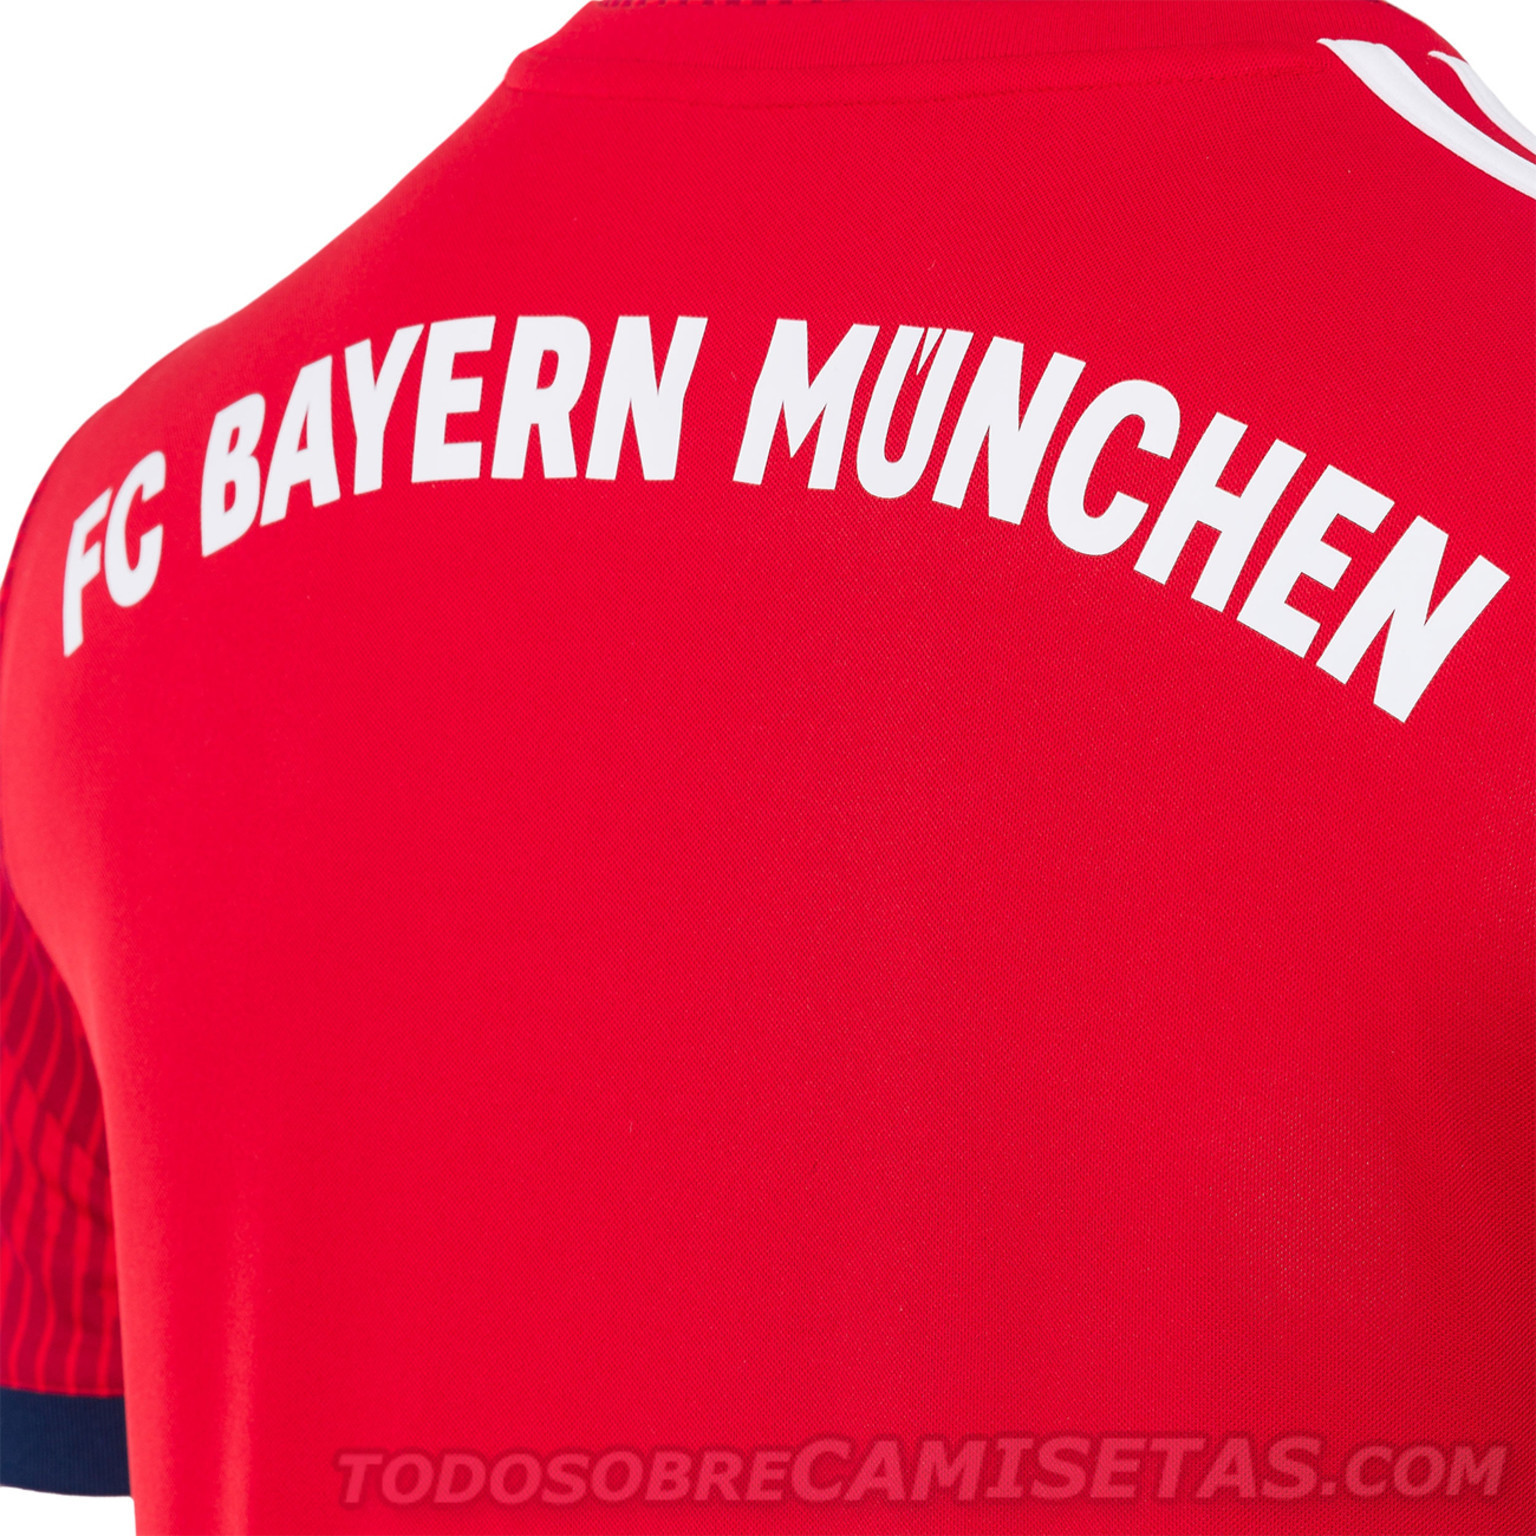 Bayern-Munich-2018-19-adidas-new-home-kit-13.jpg